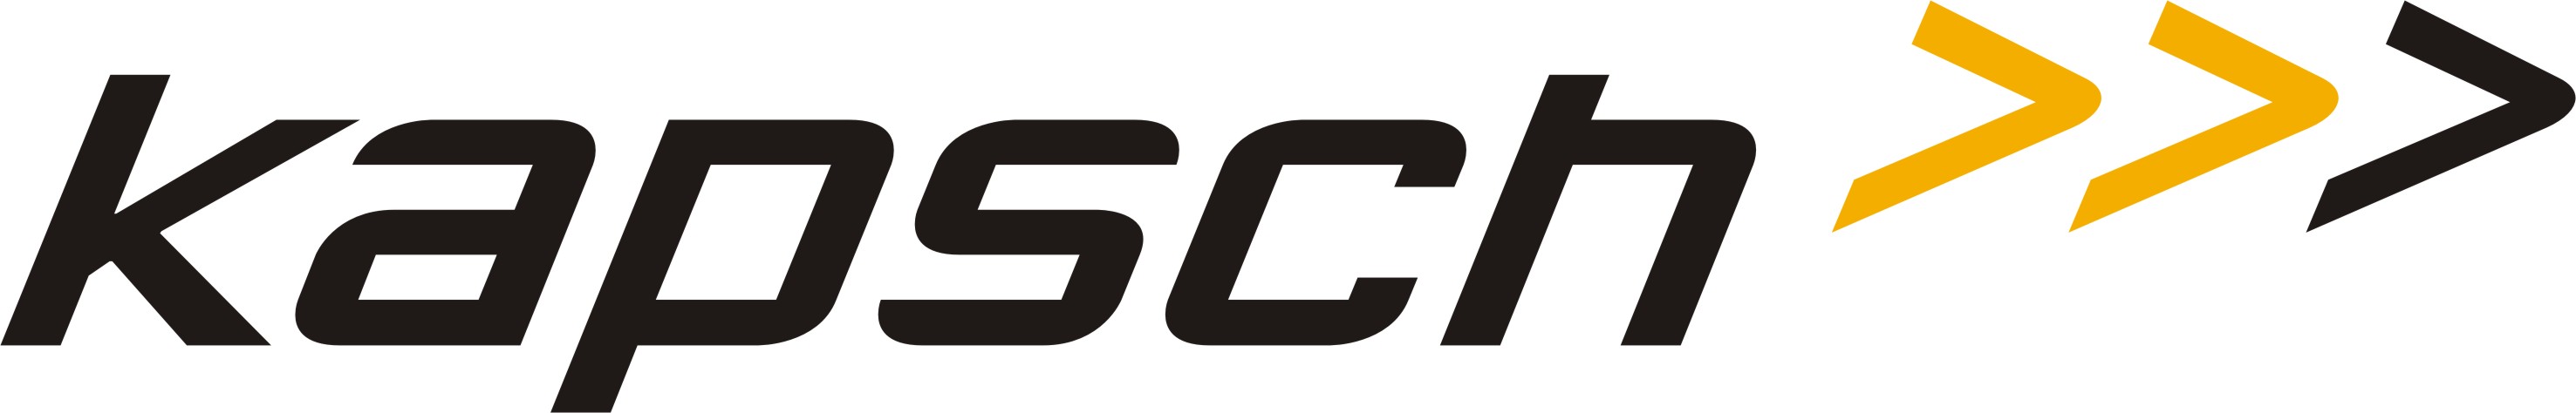 kapsch_logo